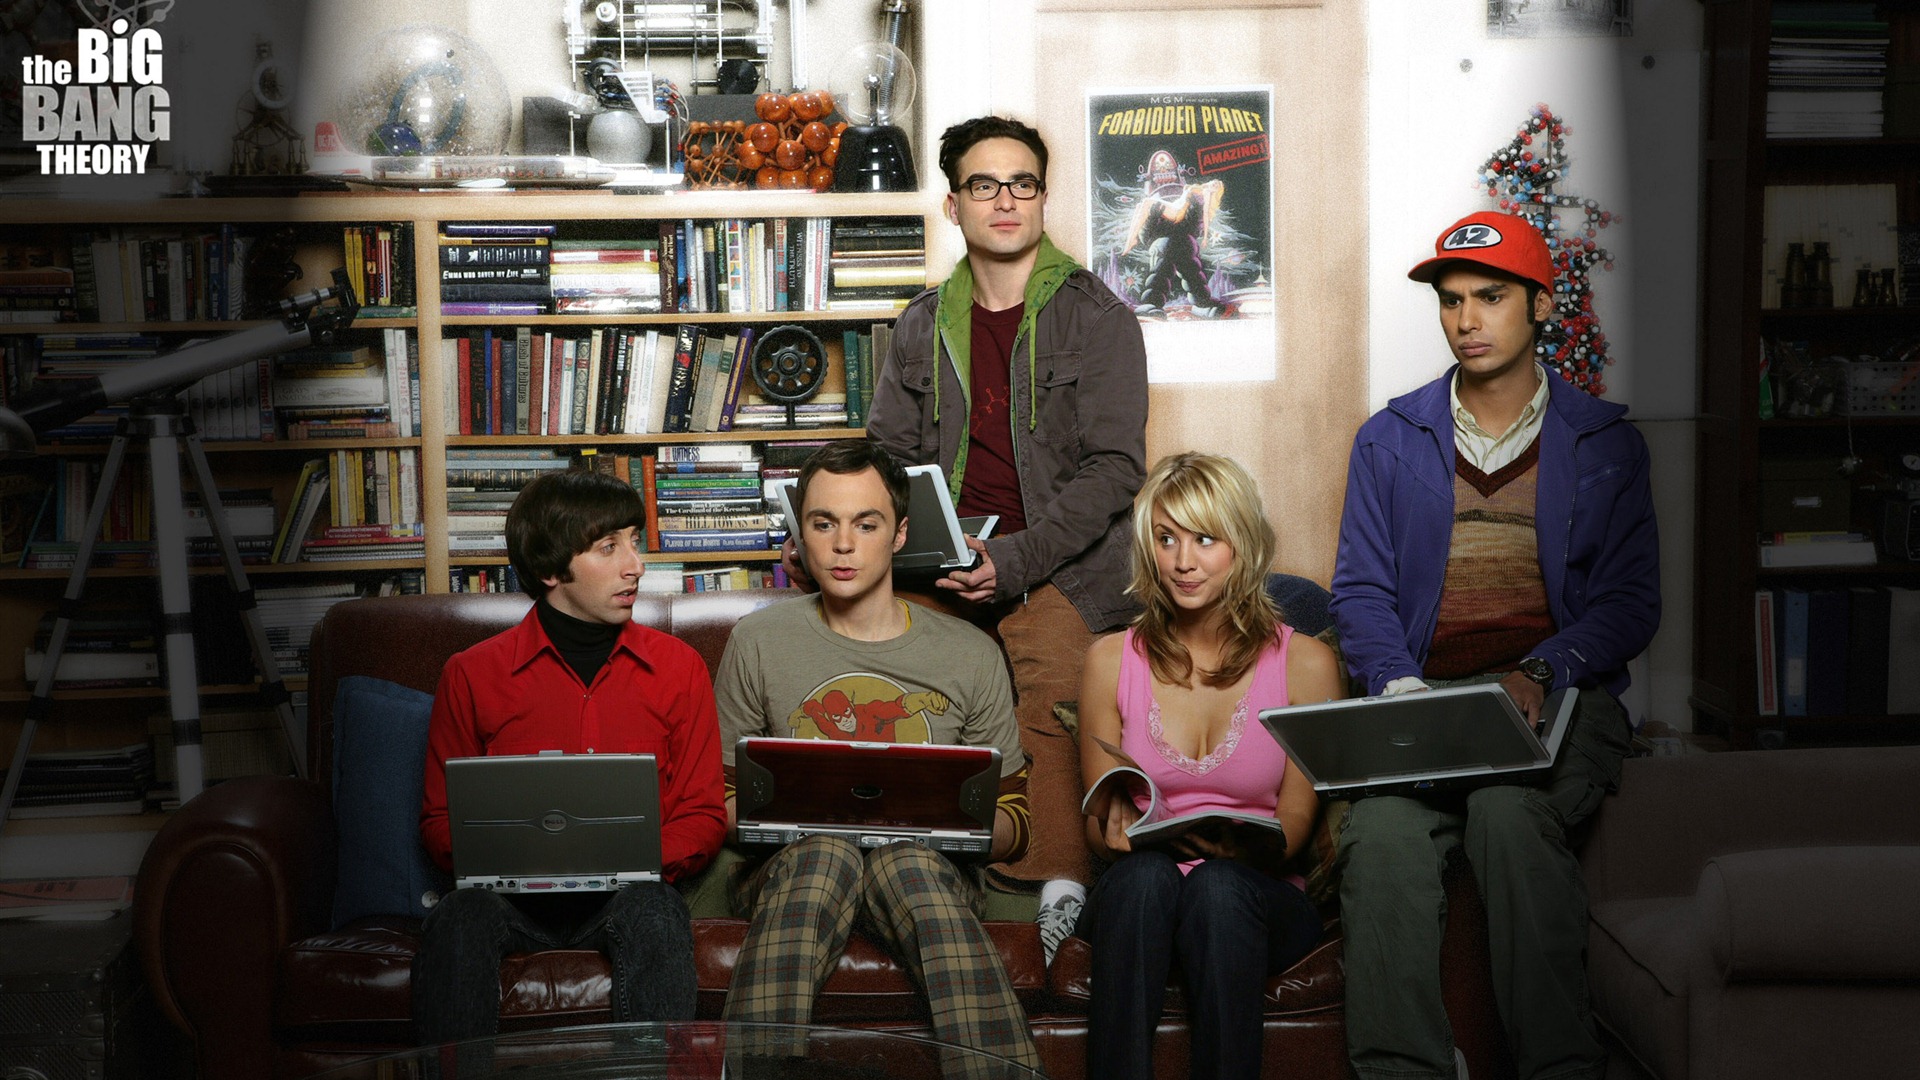 The Big Bang Theory 生活大爆炸 电视剧高清壁纸19 - 1920x1080